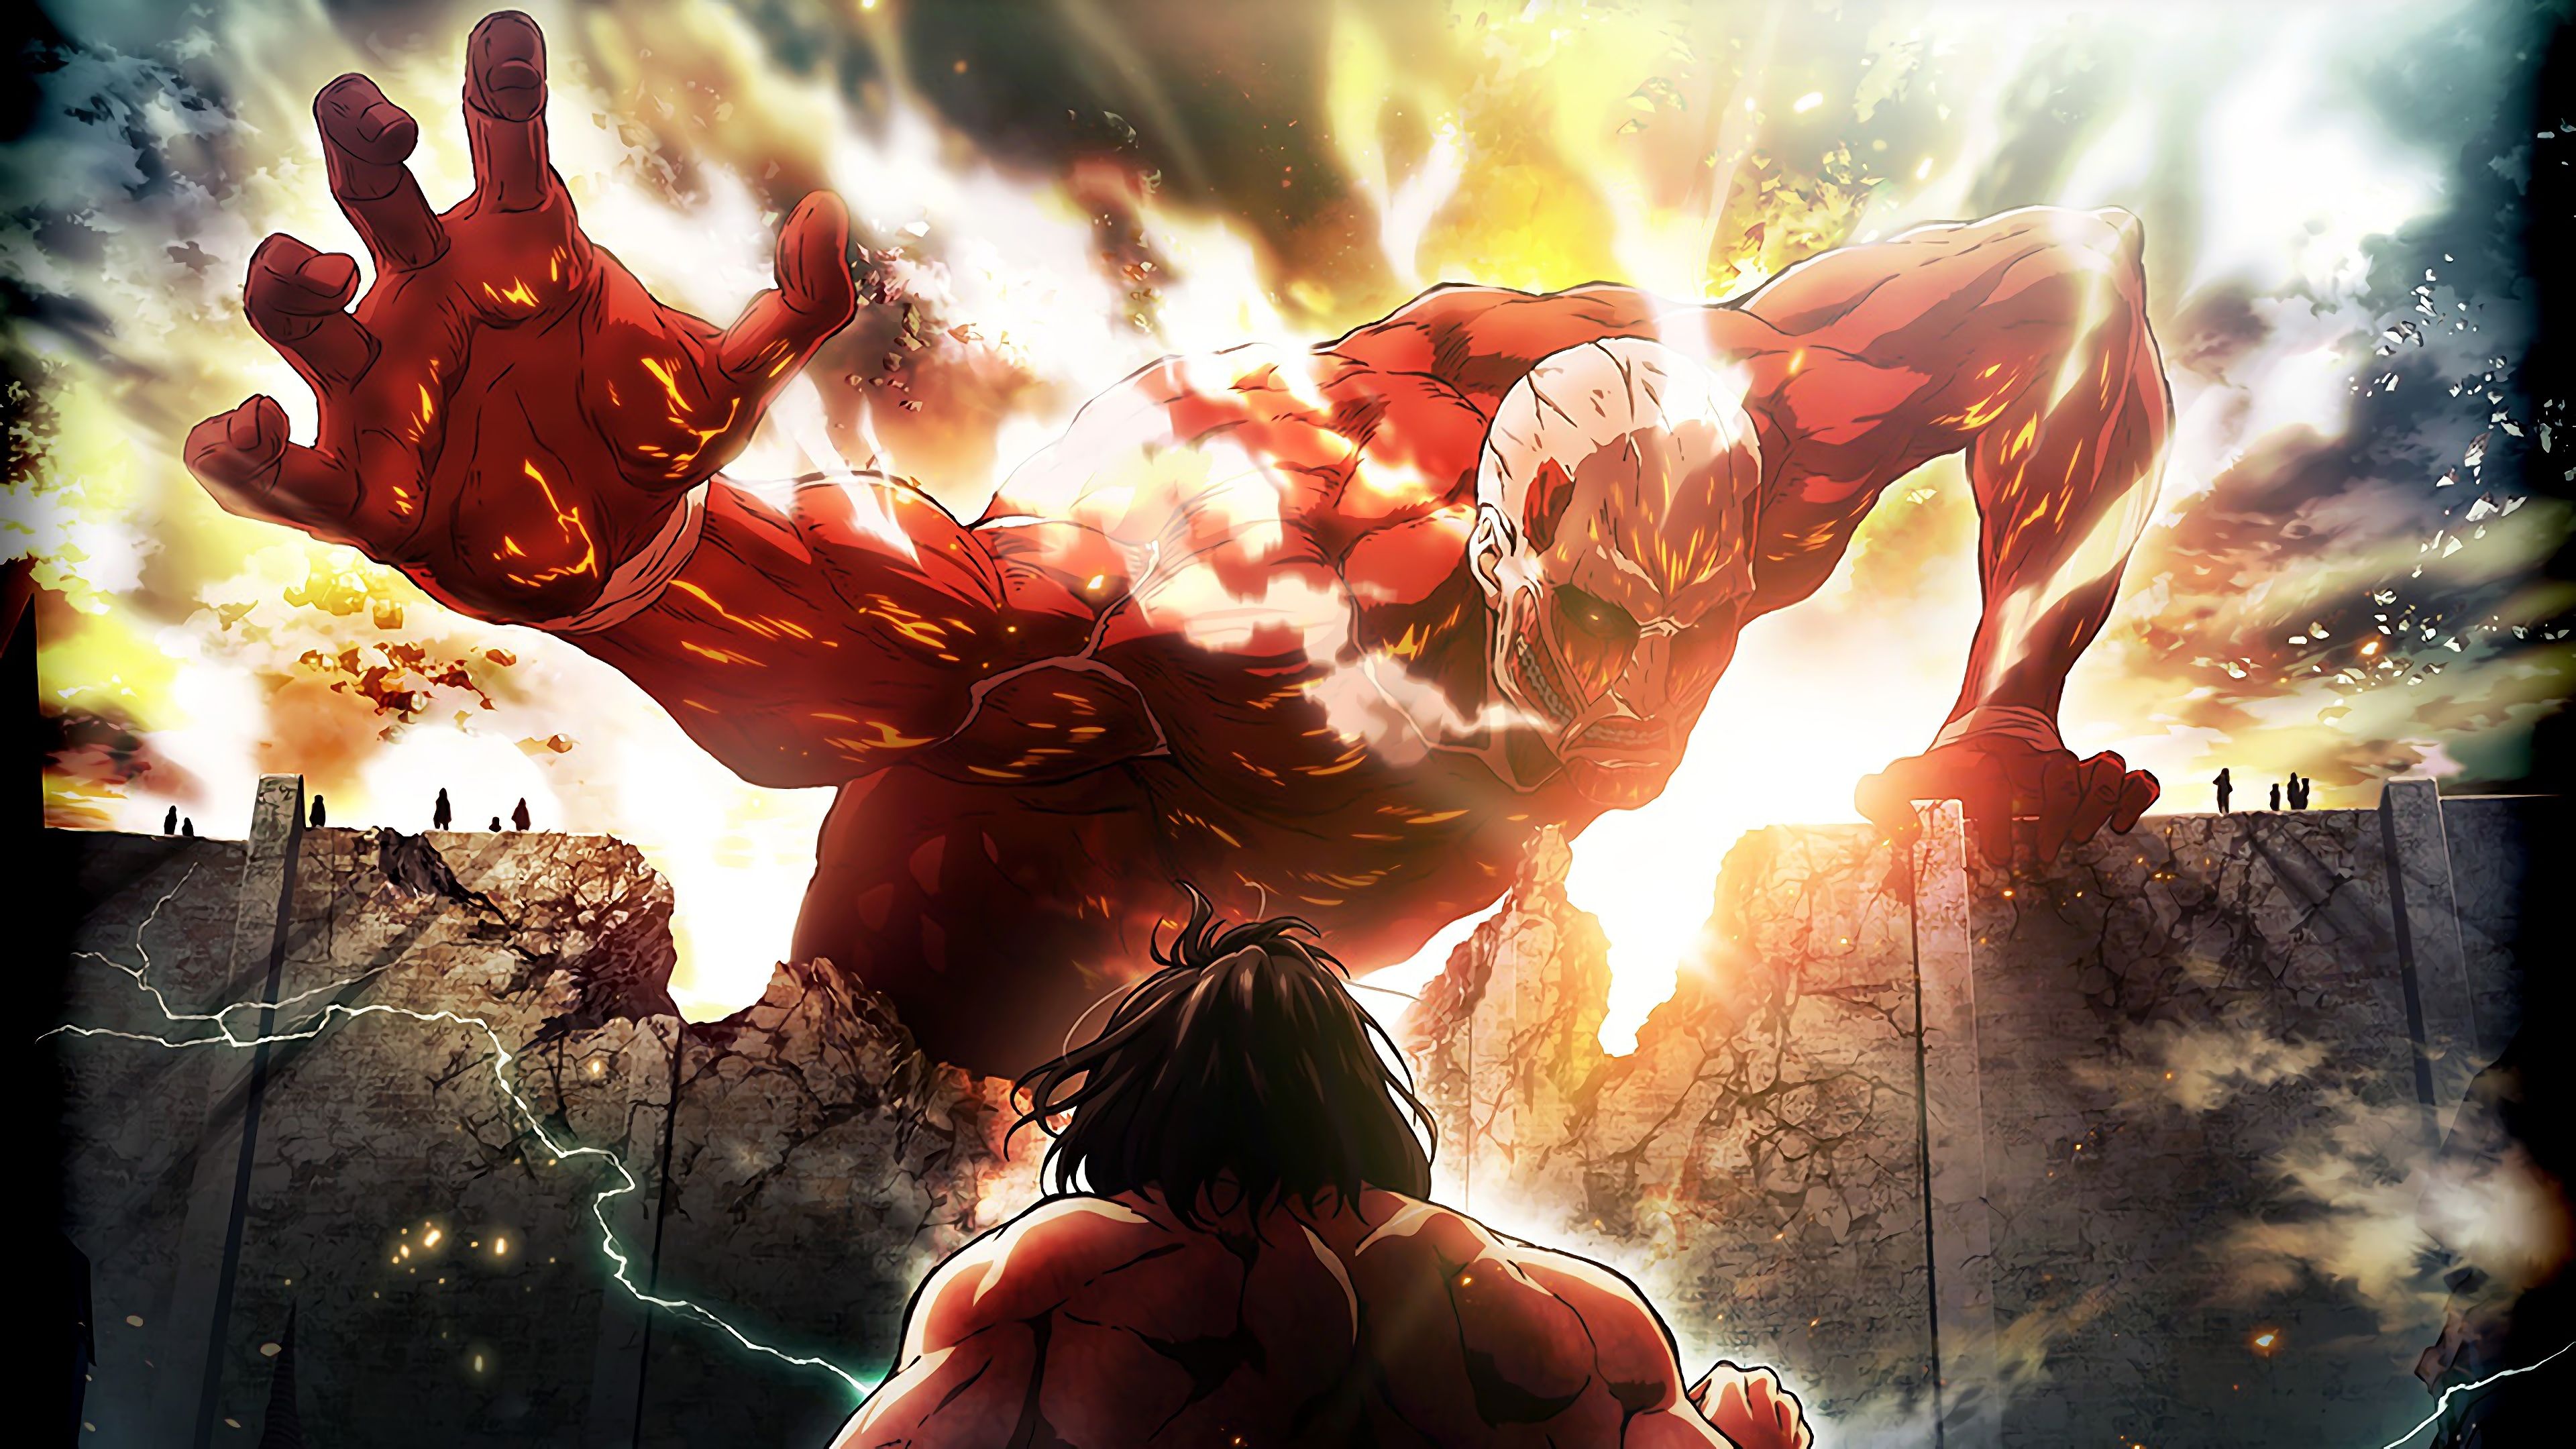 Steam Workshop::Attack on Titan - Shingeki no Kyojin 4K